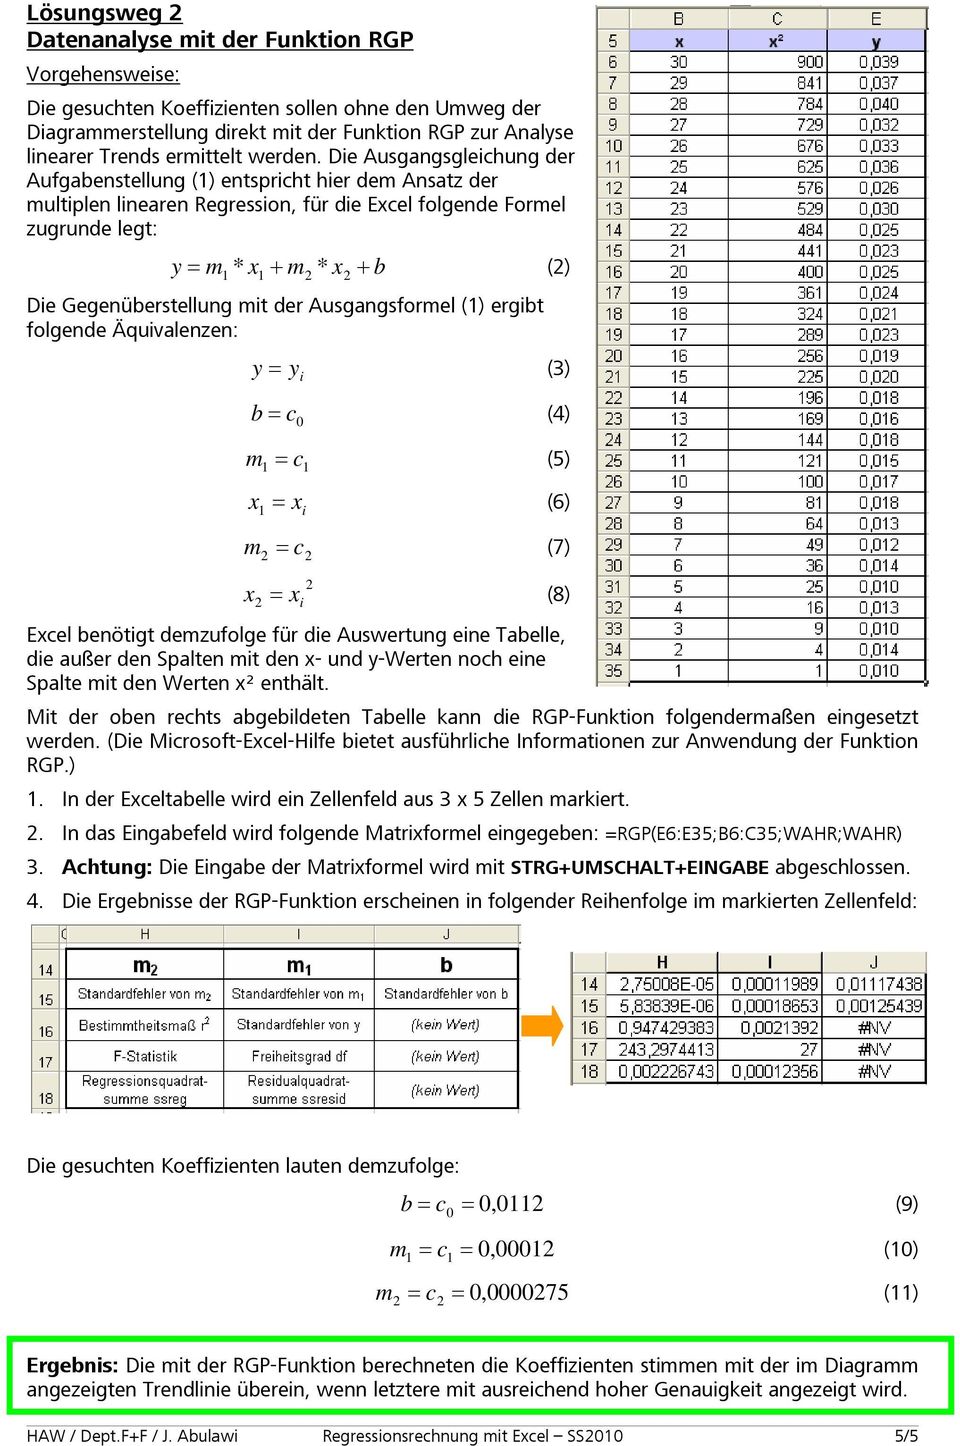 Die Ausgangsgleichung der Aufgabenstellung (1) entspricht hier dem Ansatz der multiplen linearen Regression, für die Excel folgende Formel zugrunde legt: y m * x + m x + b () 1 1 * Die